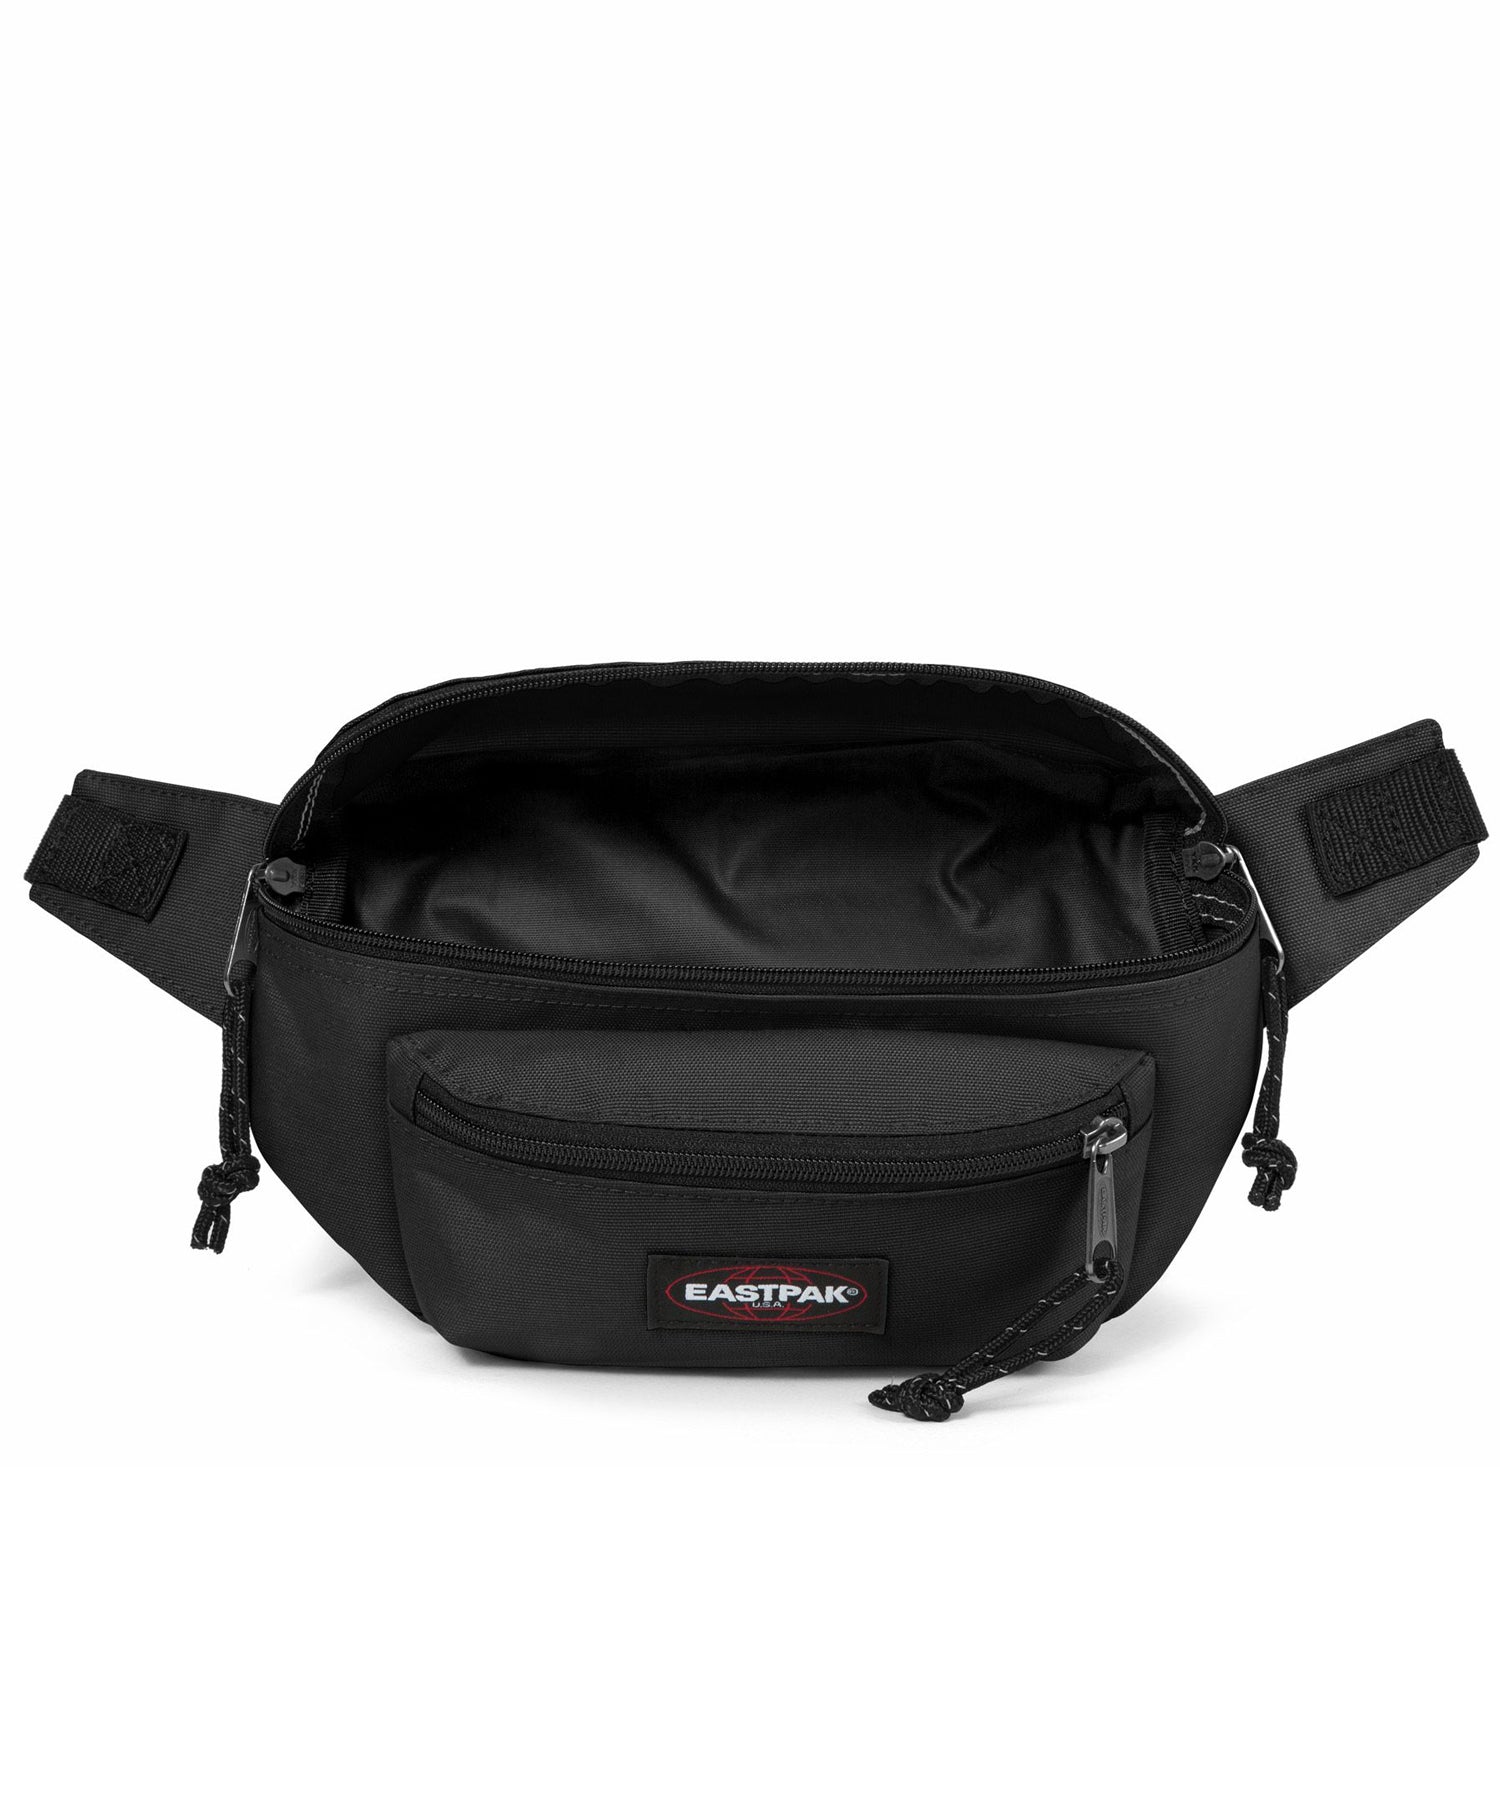 eastpak-doggy bag riñonera amplia de color negro oscuro-dos bolsillos delanteros y uno trasero-calidad y durabilidad eastpak